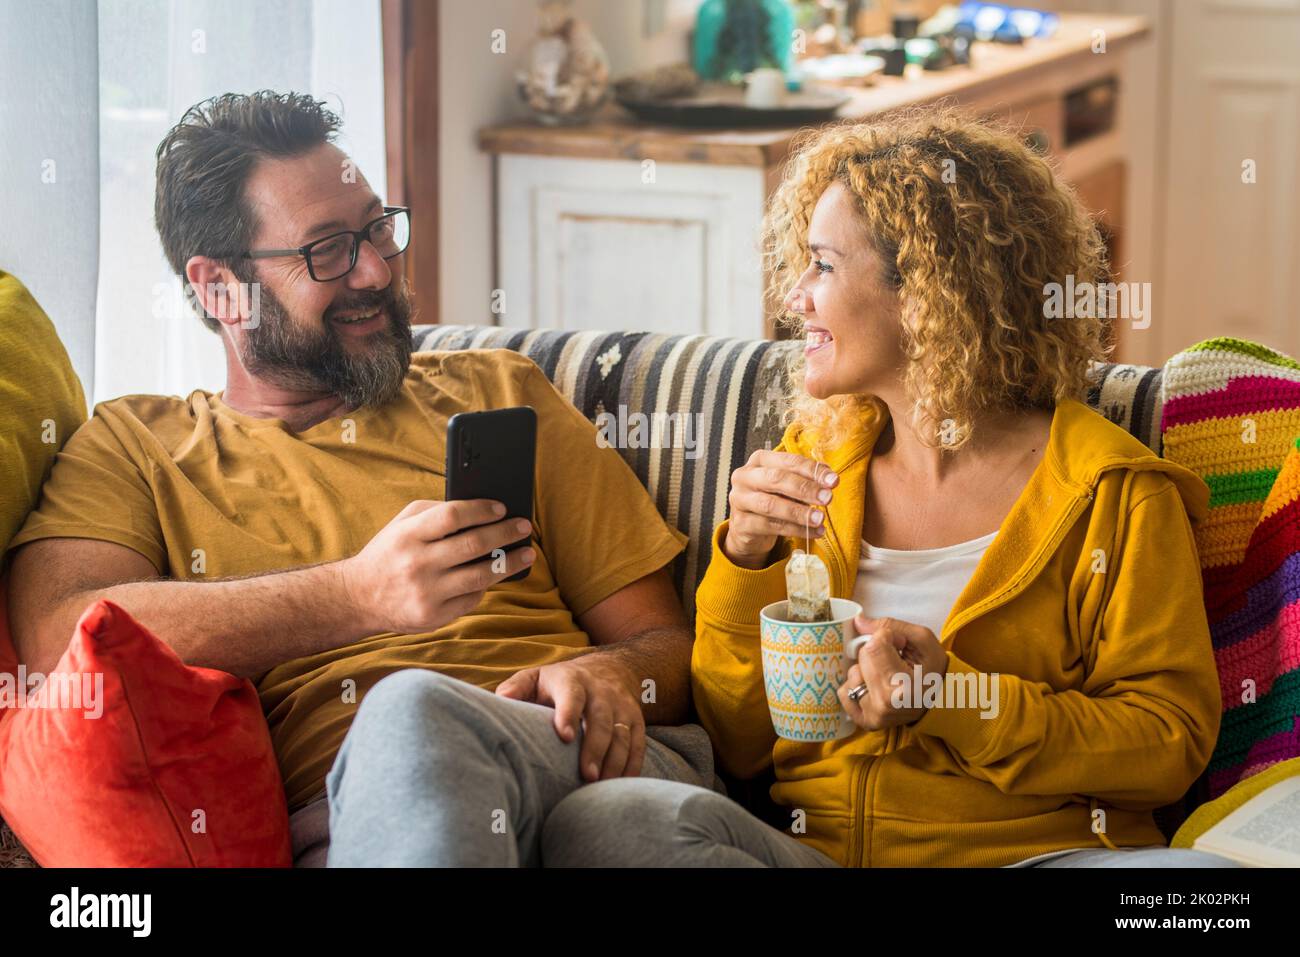 Erwachsene Paare genießen Freizeit zu Hause beim Frühstück am Morgen. Mann am Telefon und Frau, die Tee trinkt. Menschen zusammen in Beziehung und im echten häuslichen Leben sitzen auf dem Sofa in der Wohnung Stockfoto